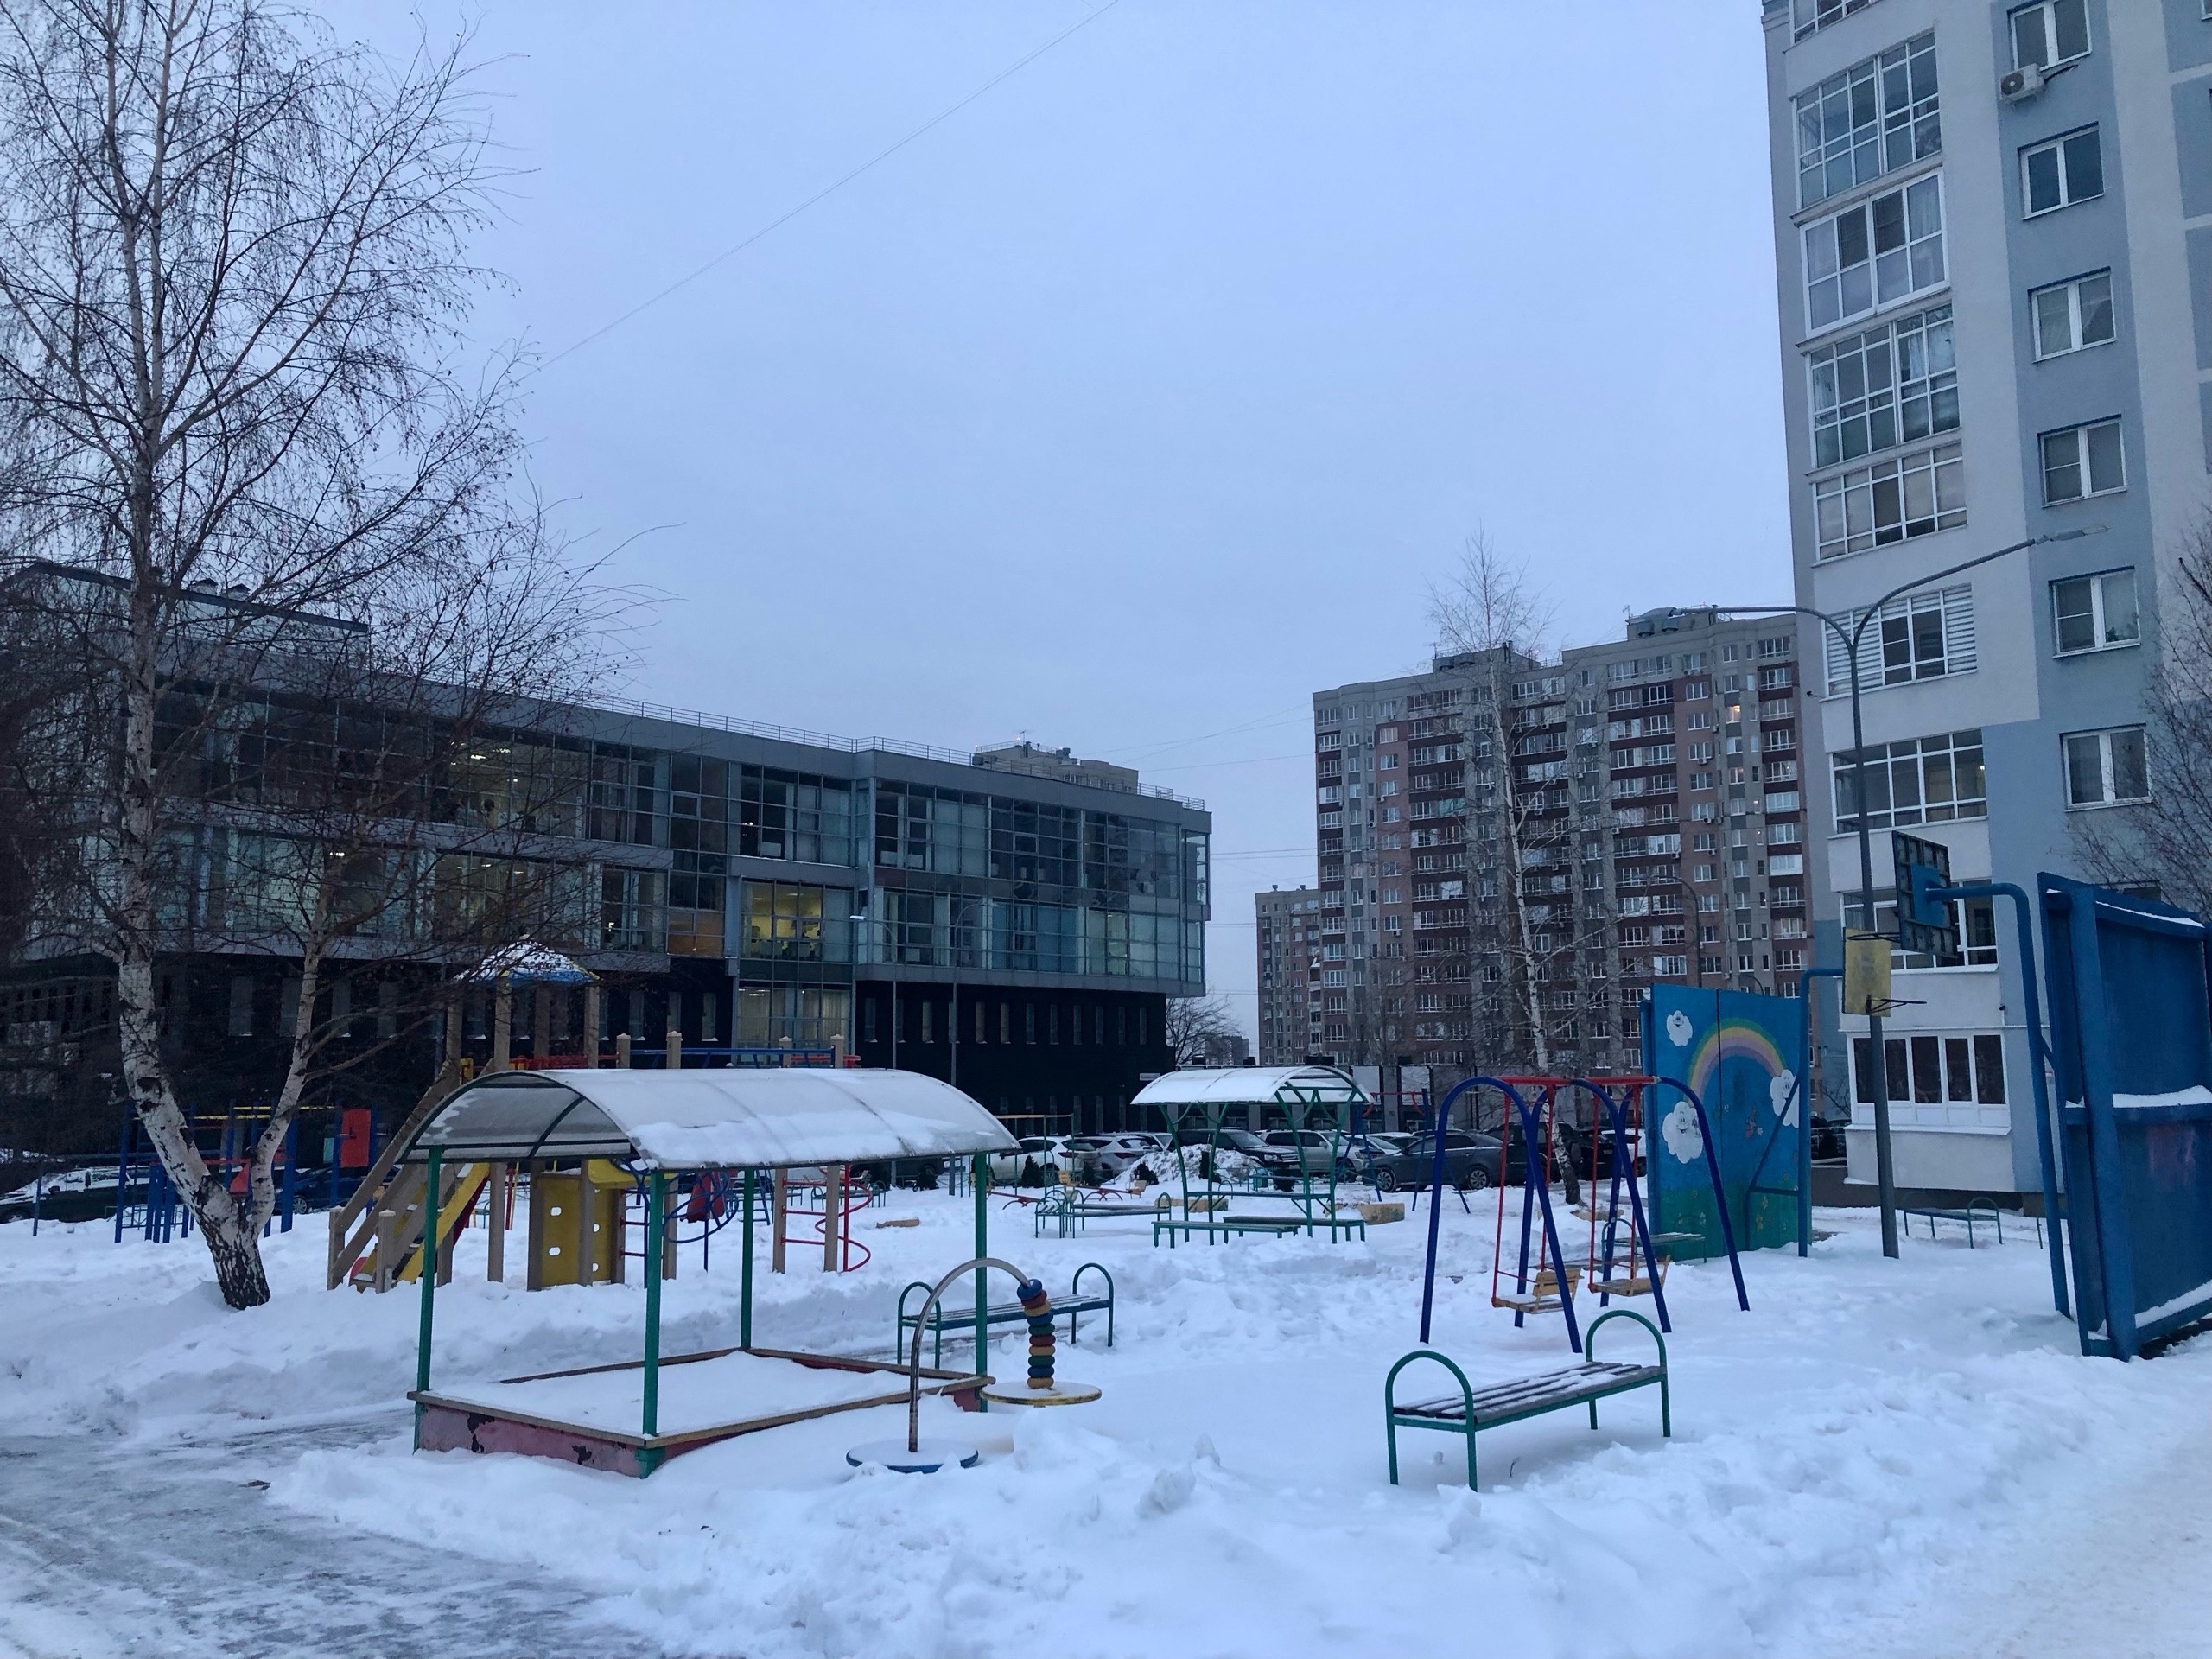 Дешевле купить свою: в Нижнем Новгороде за год взлетели цены на арендованные квартиры